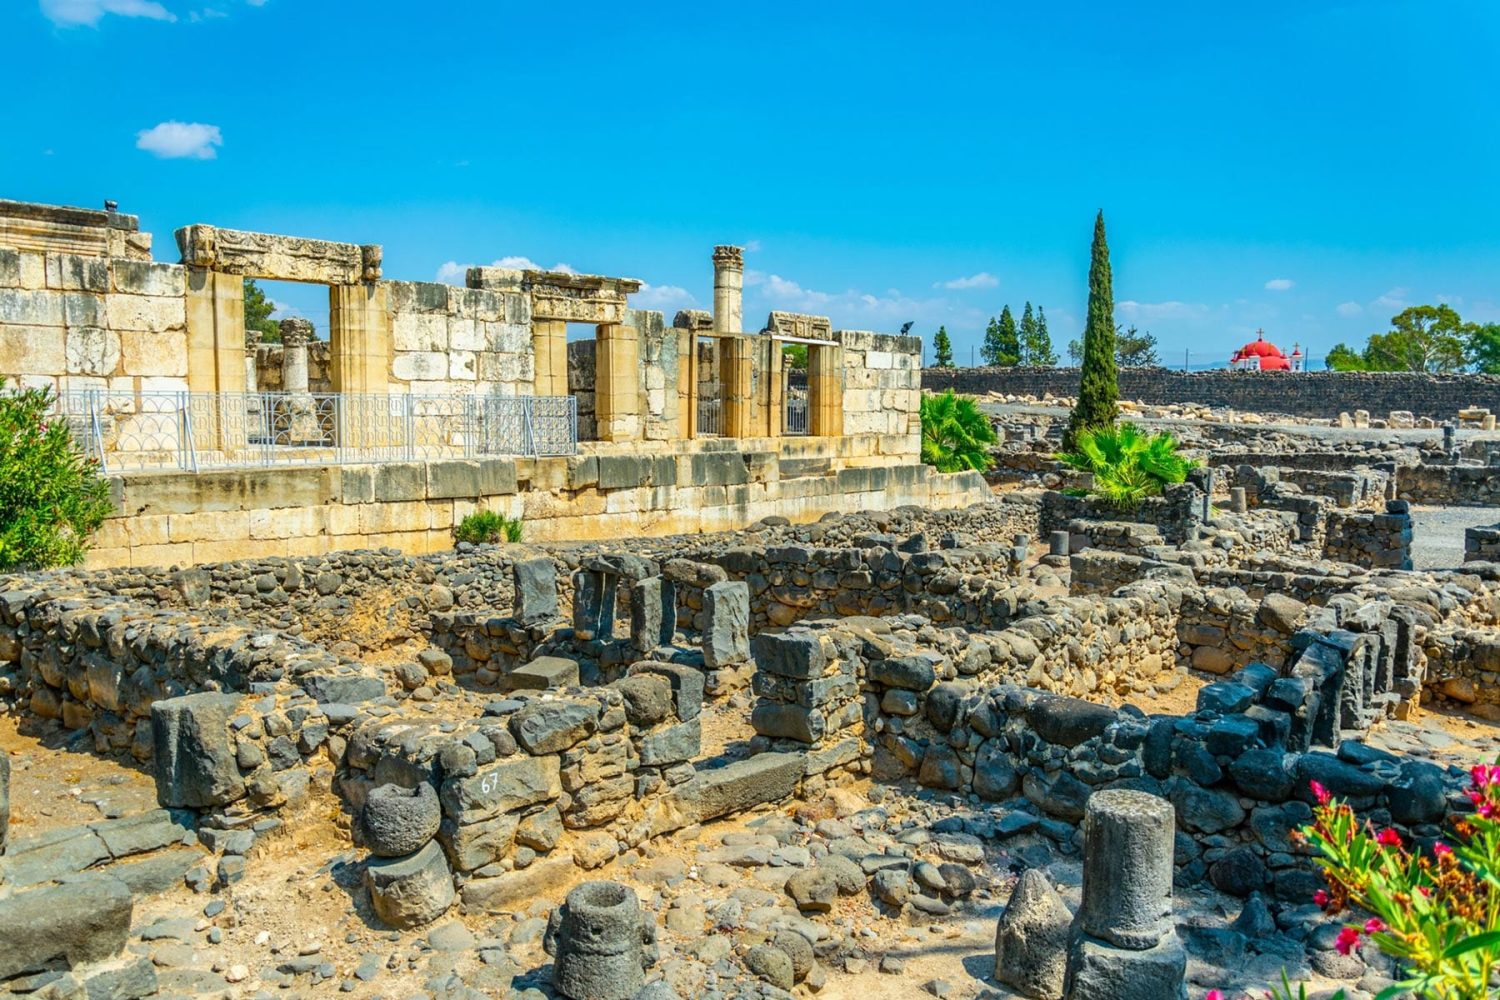 Ruins of Capernaum